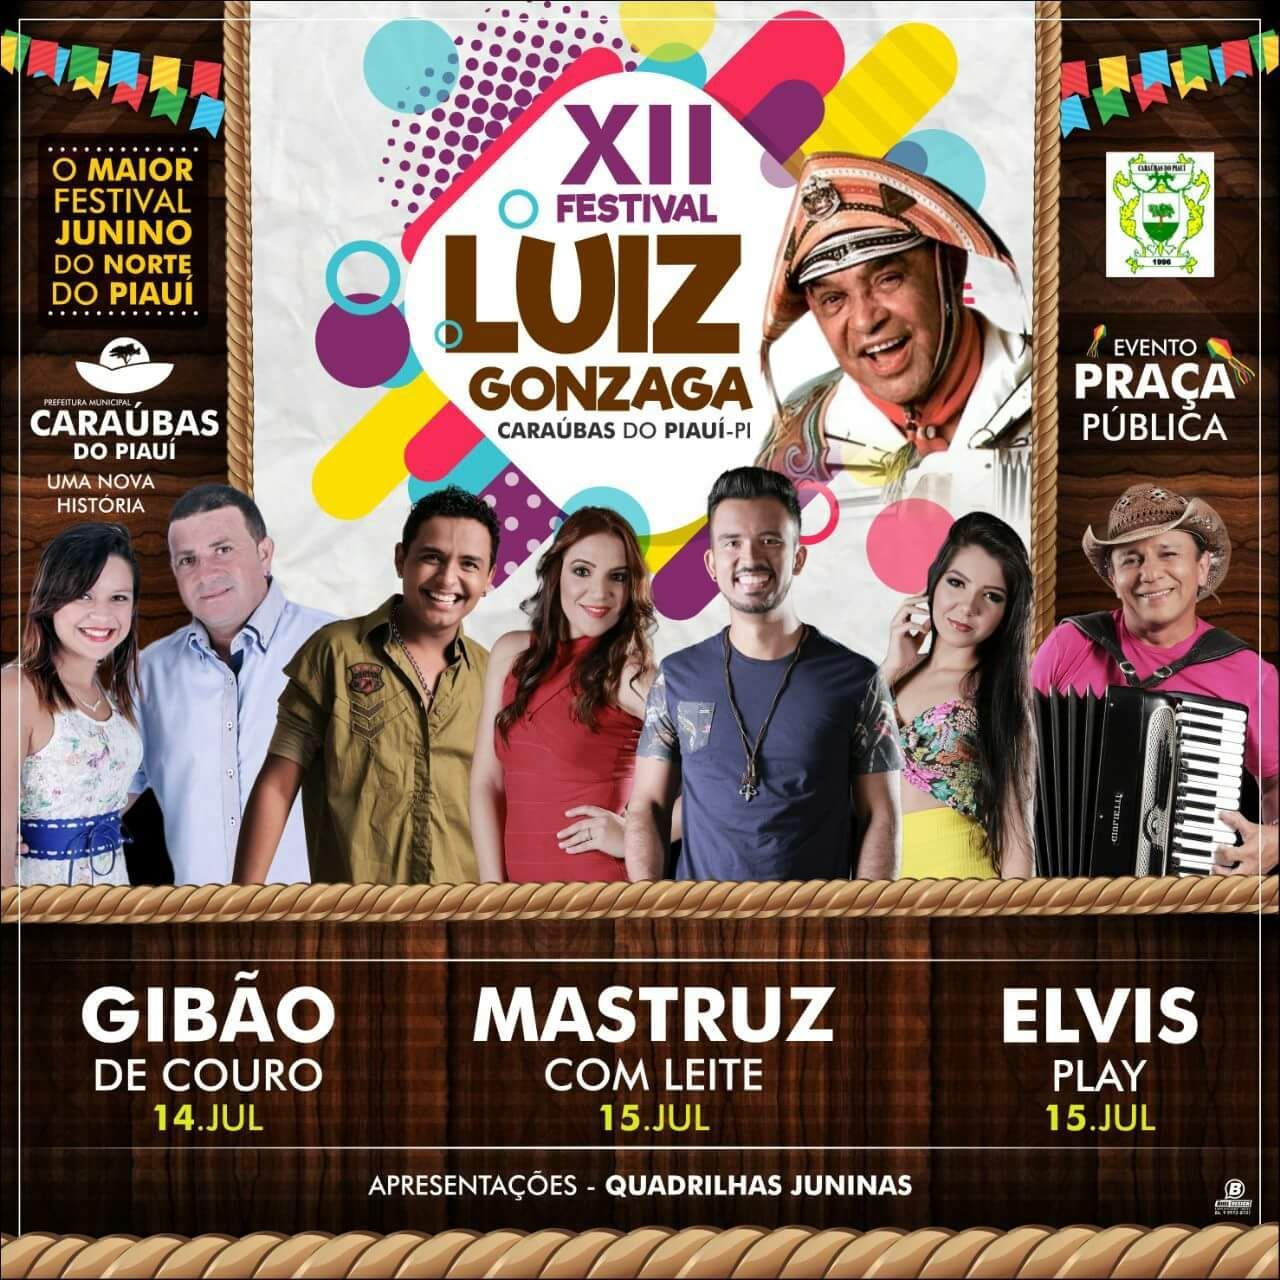 Resultado de imagem para festival luiz gonzaga CARAUBAS DO PIAUI